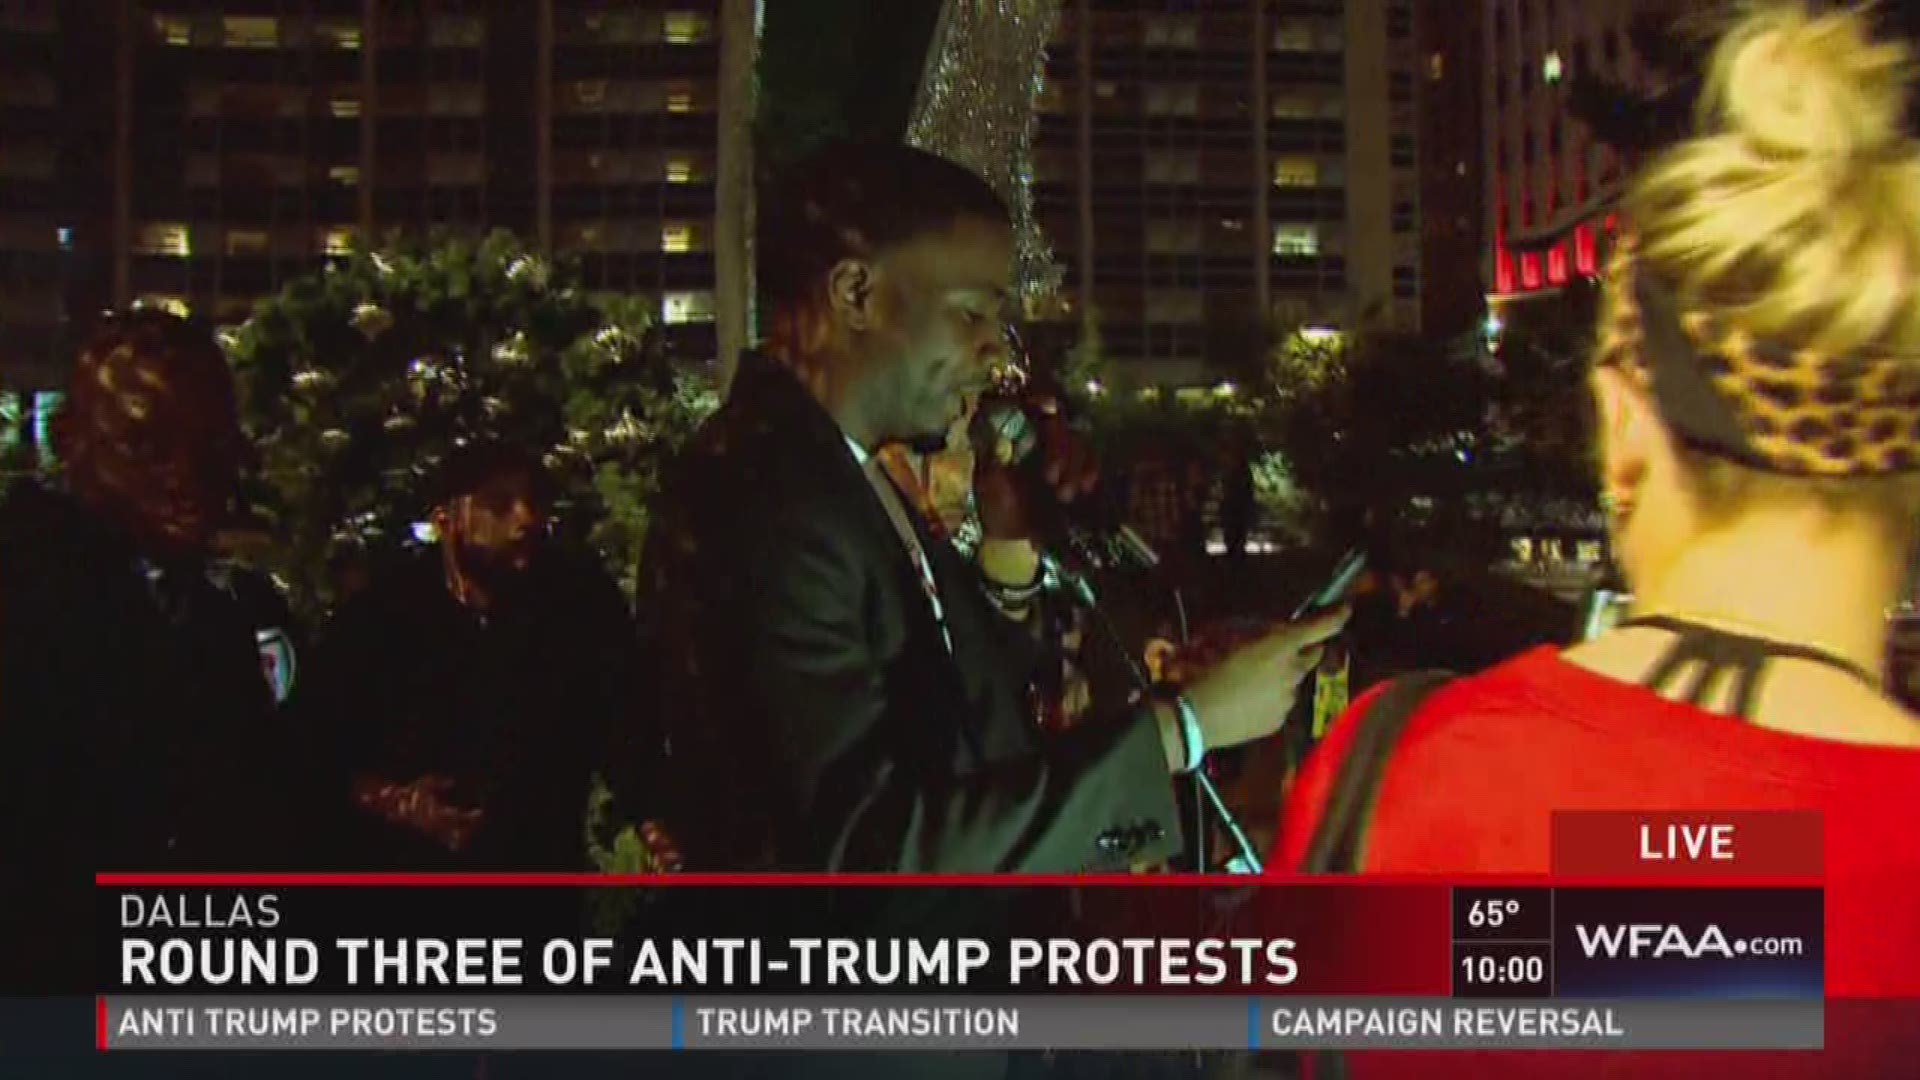 Round three of anti-trump protests in Dallas